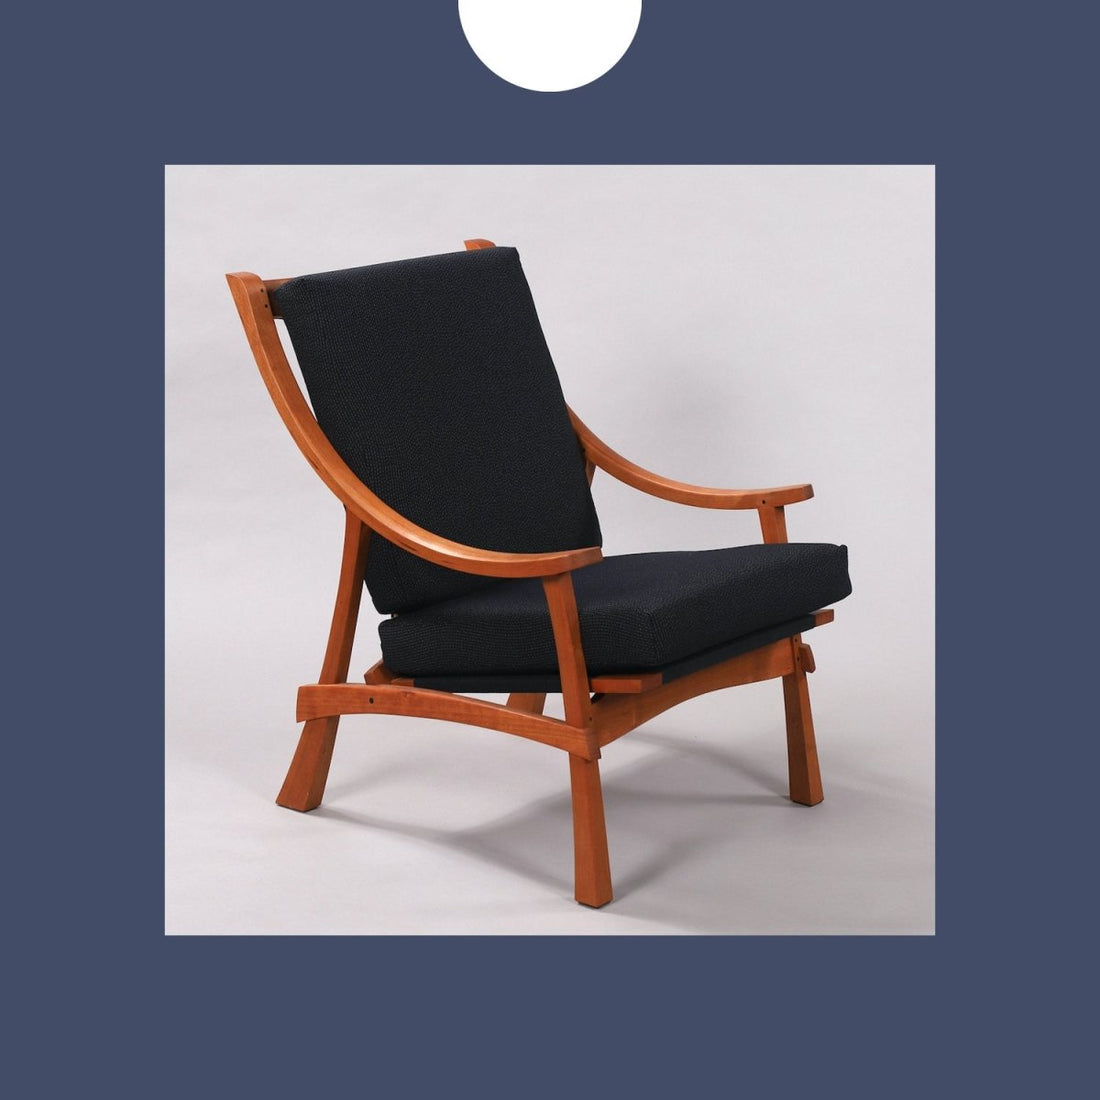  John Spivey Fine Furniture - American Craft Council